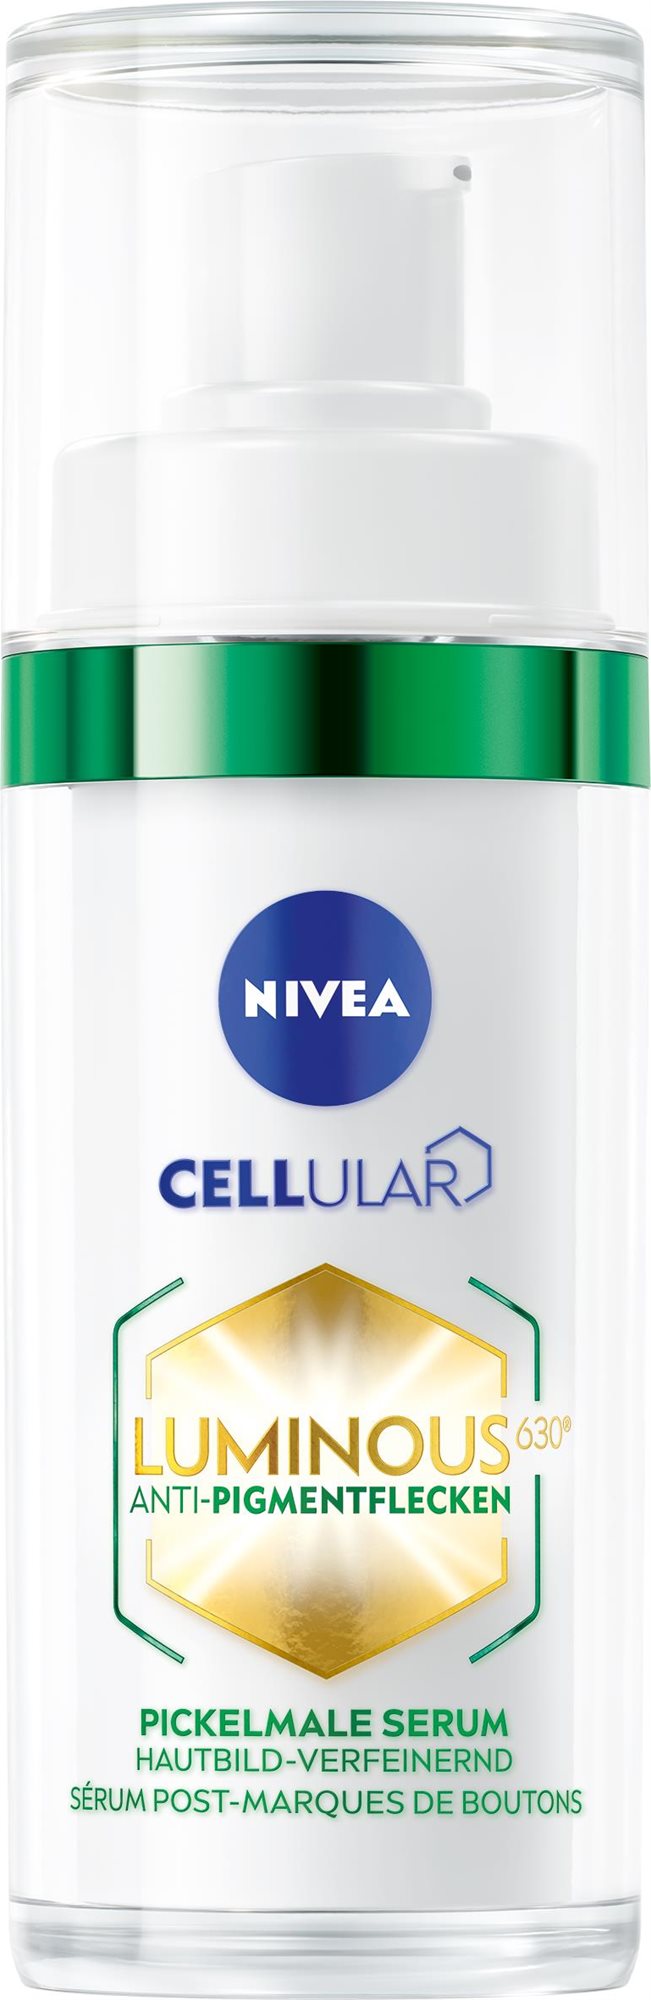 Arcápoló szérum NIVEA Cellular Luminous 630 Aknék utáni sötét foltok ellen 30 ml